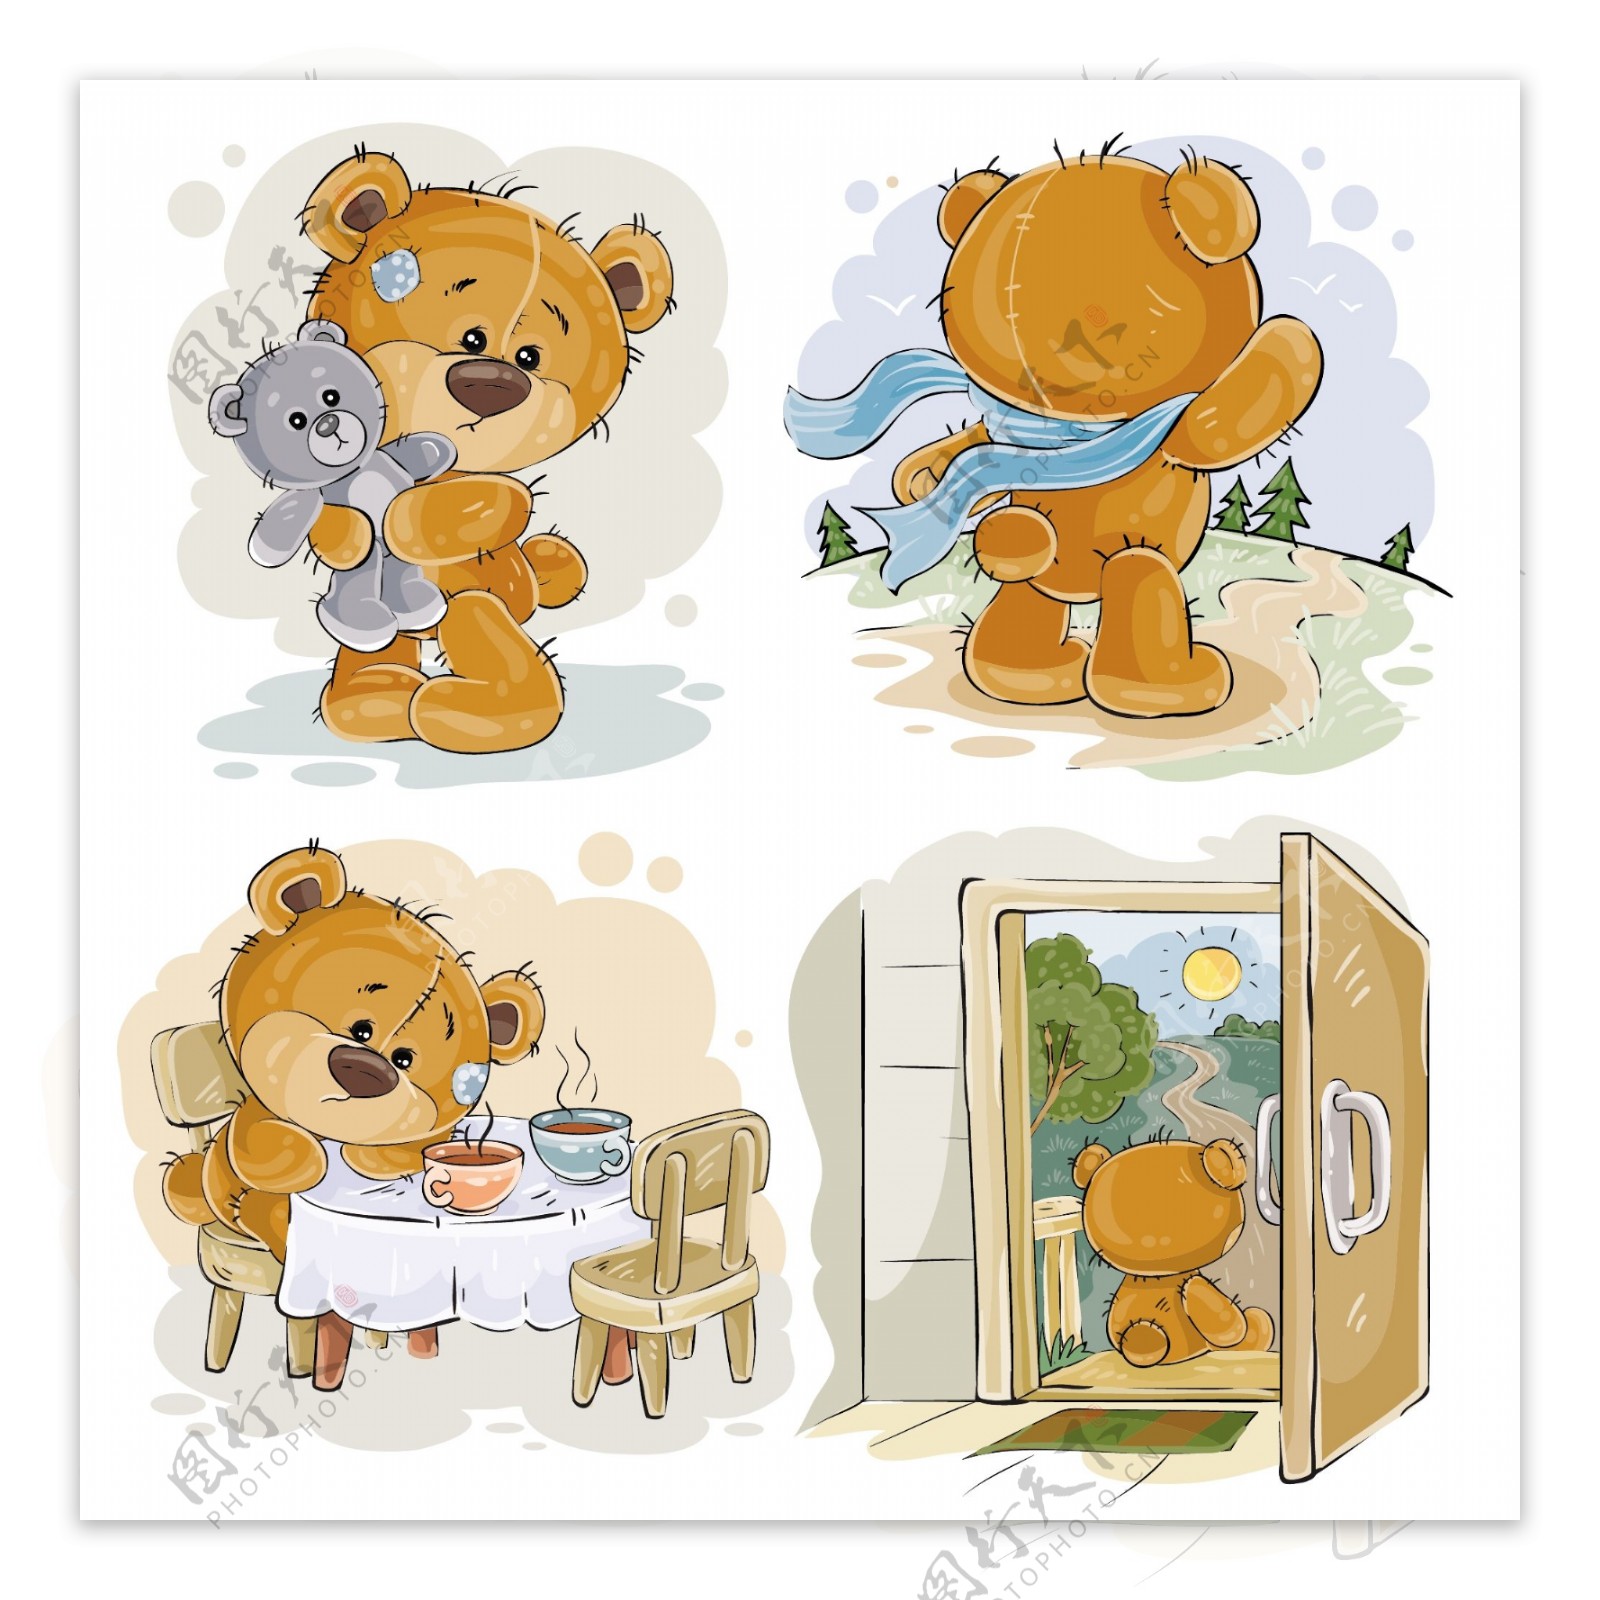 4款彩绘泰迪熊设计矢量素材